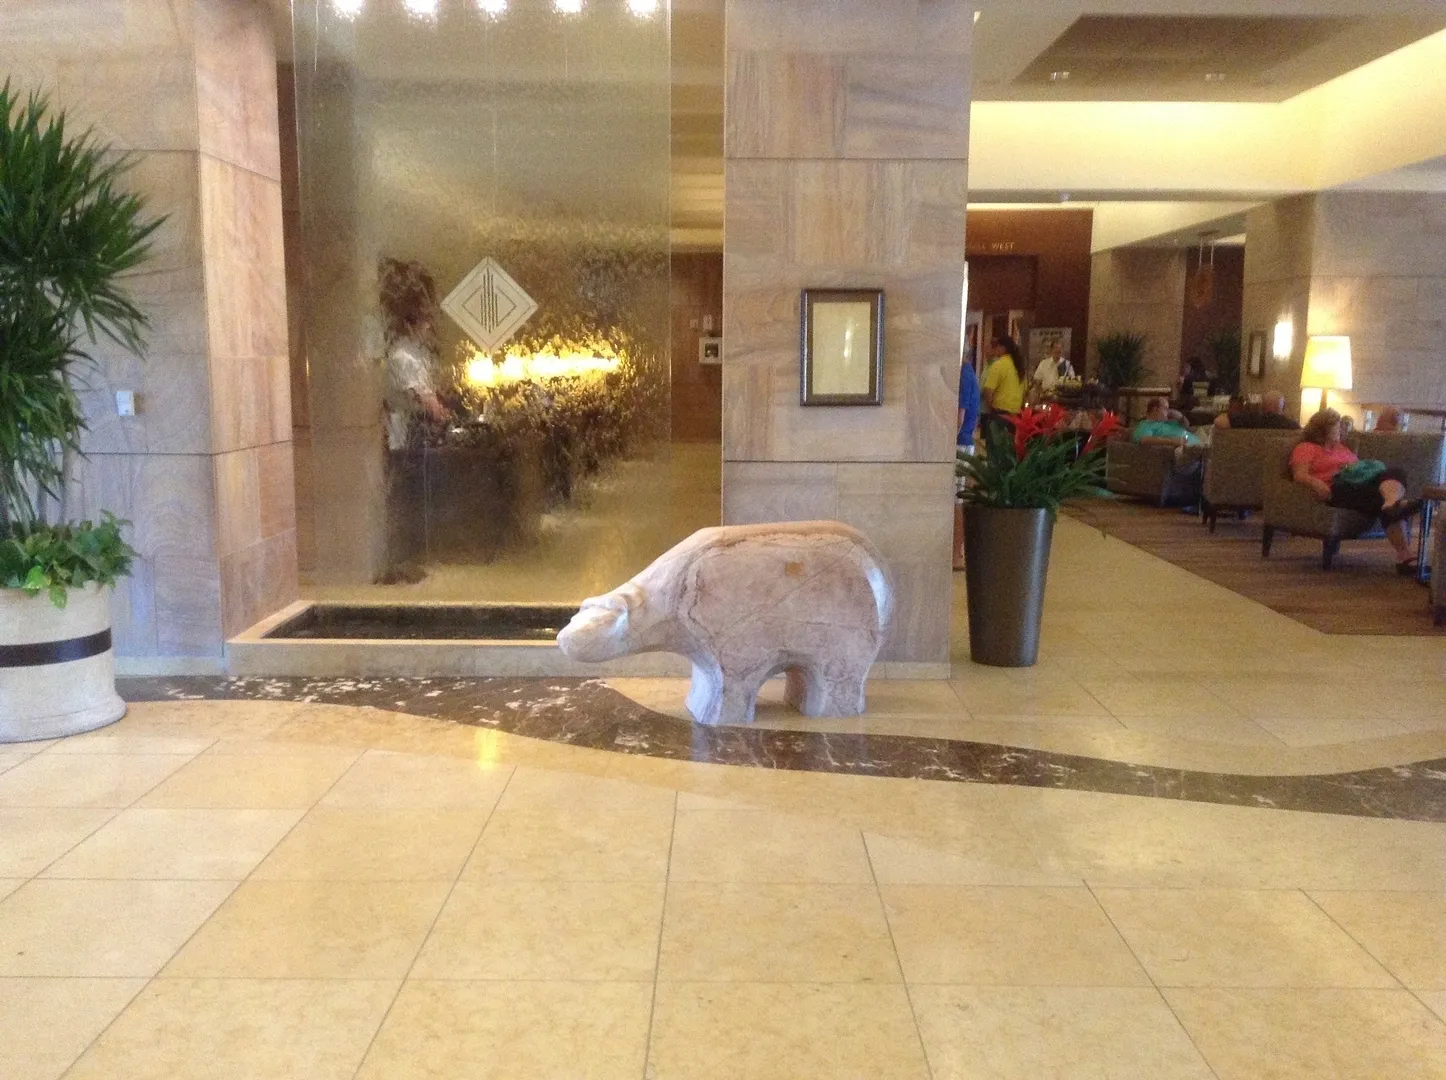 A polar bear statue in the lobby of an hotel.